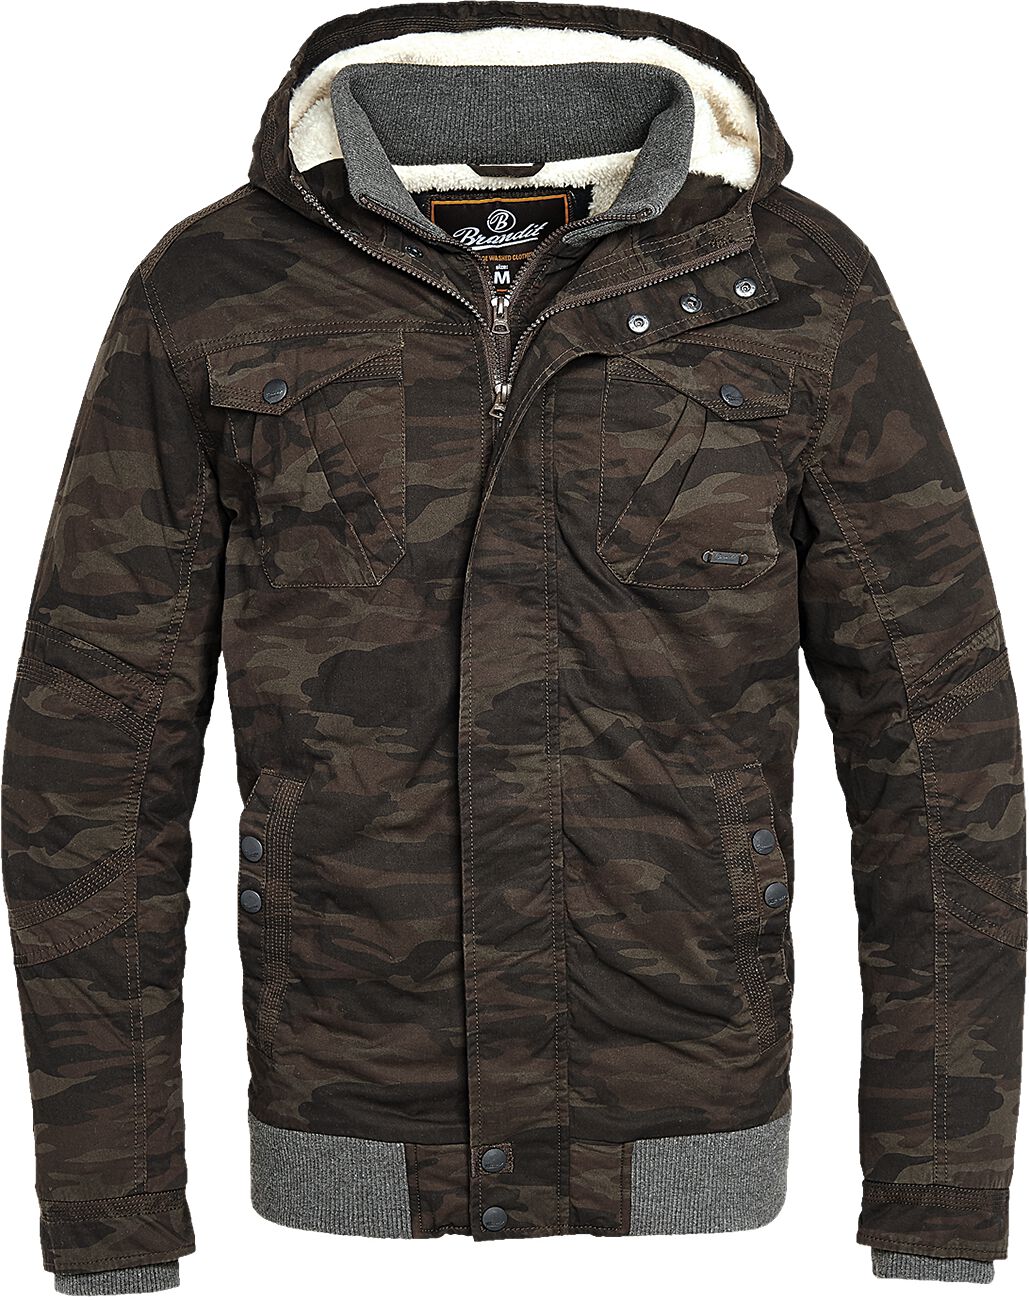 Brandit - Camouflage/Flecktarn Winterjacke - Parkmont Jacket - S bis 5XL - für Männer - Größe 4XL - camouflage